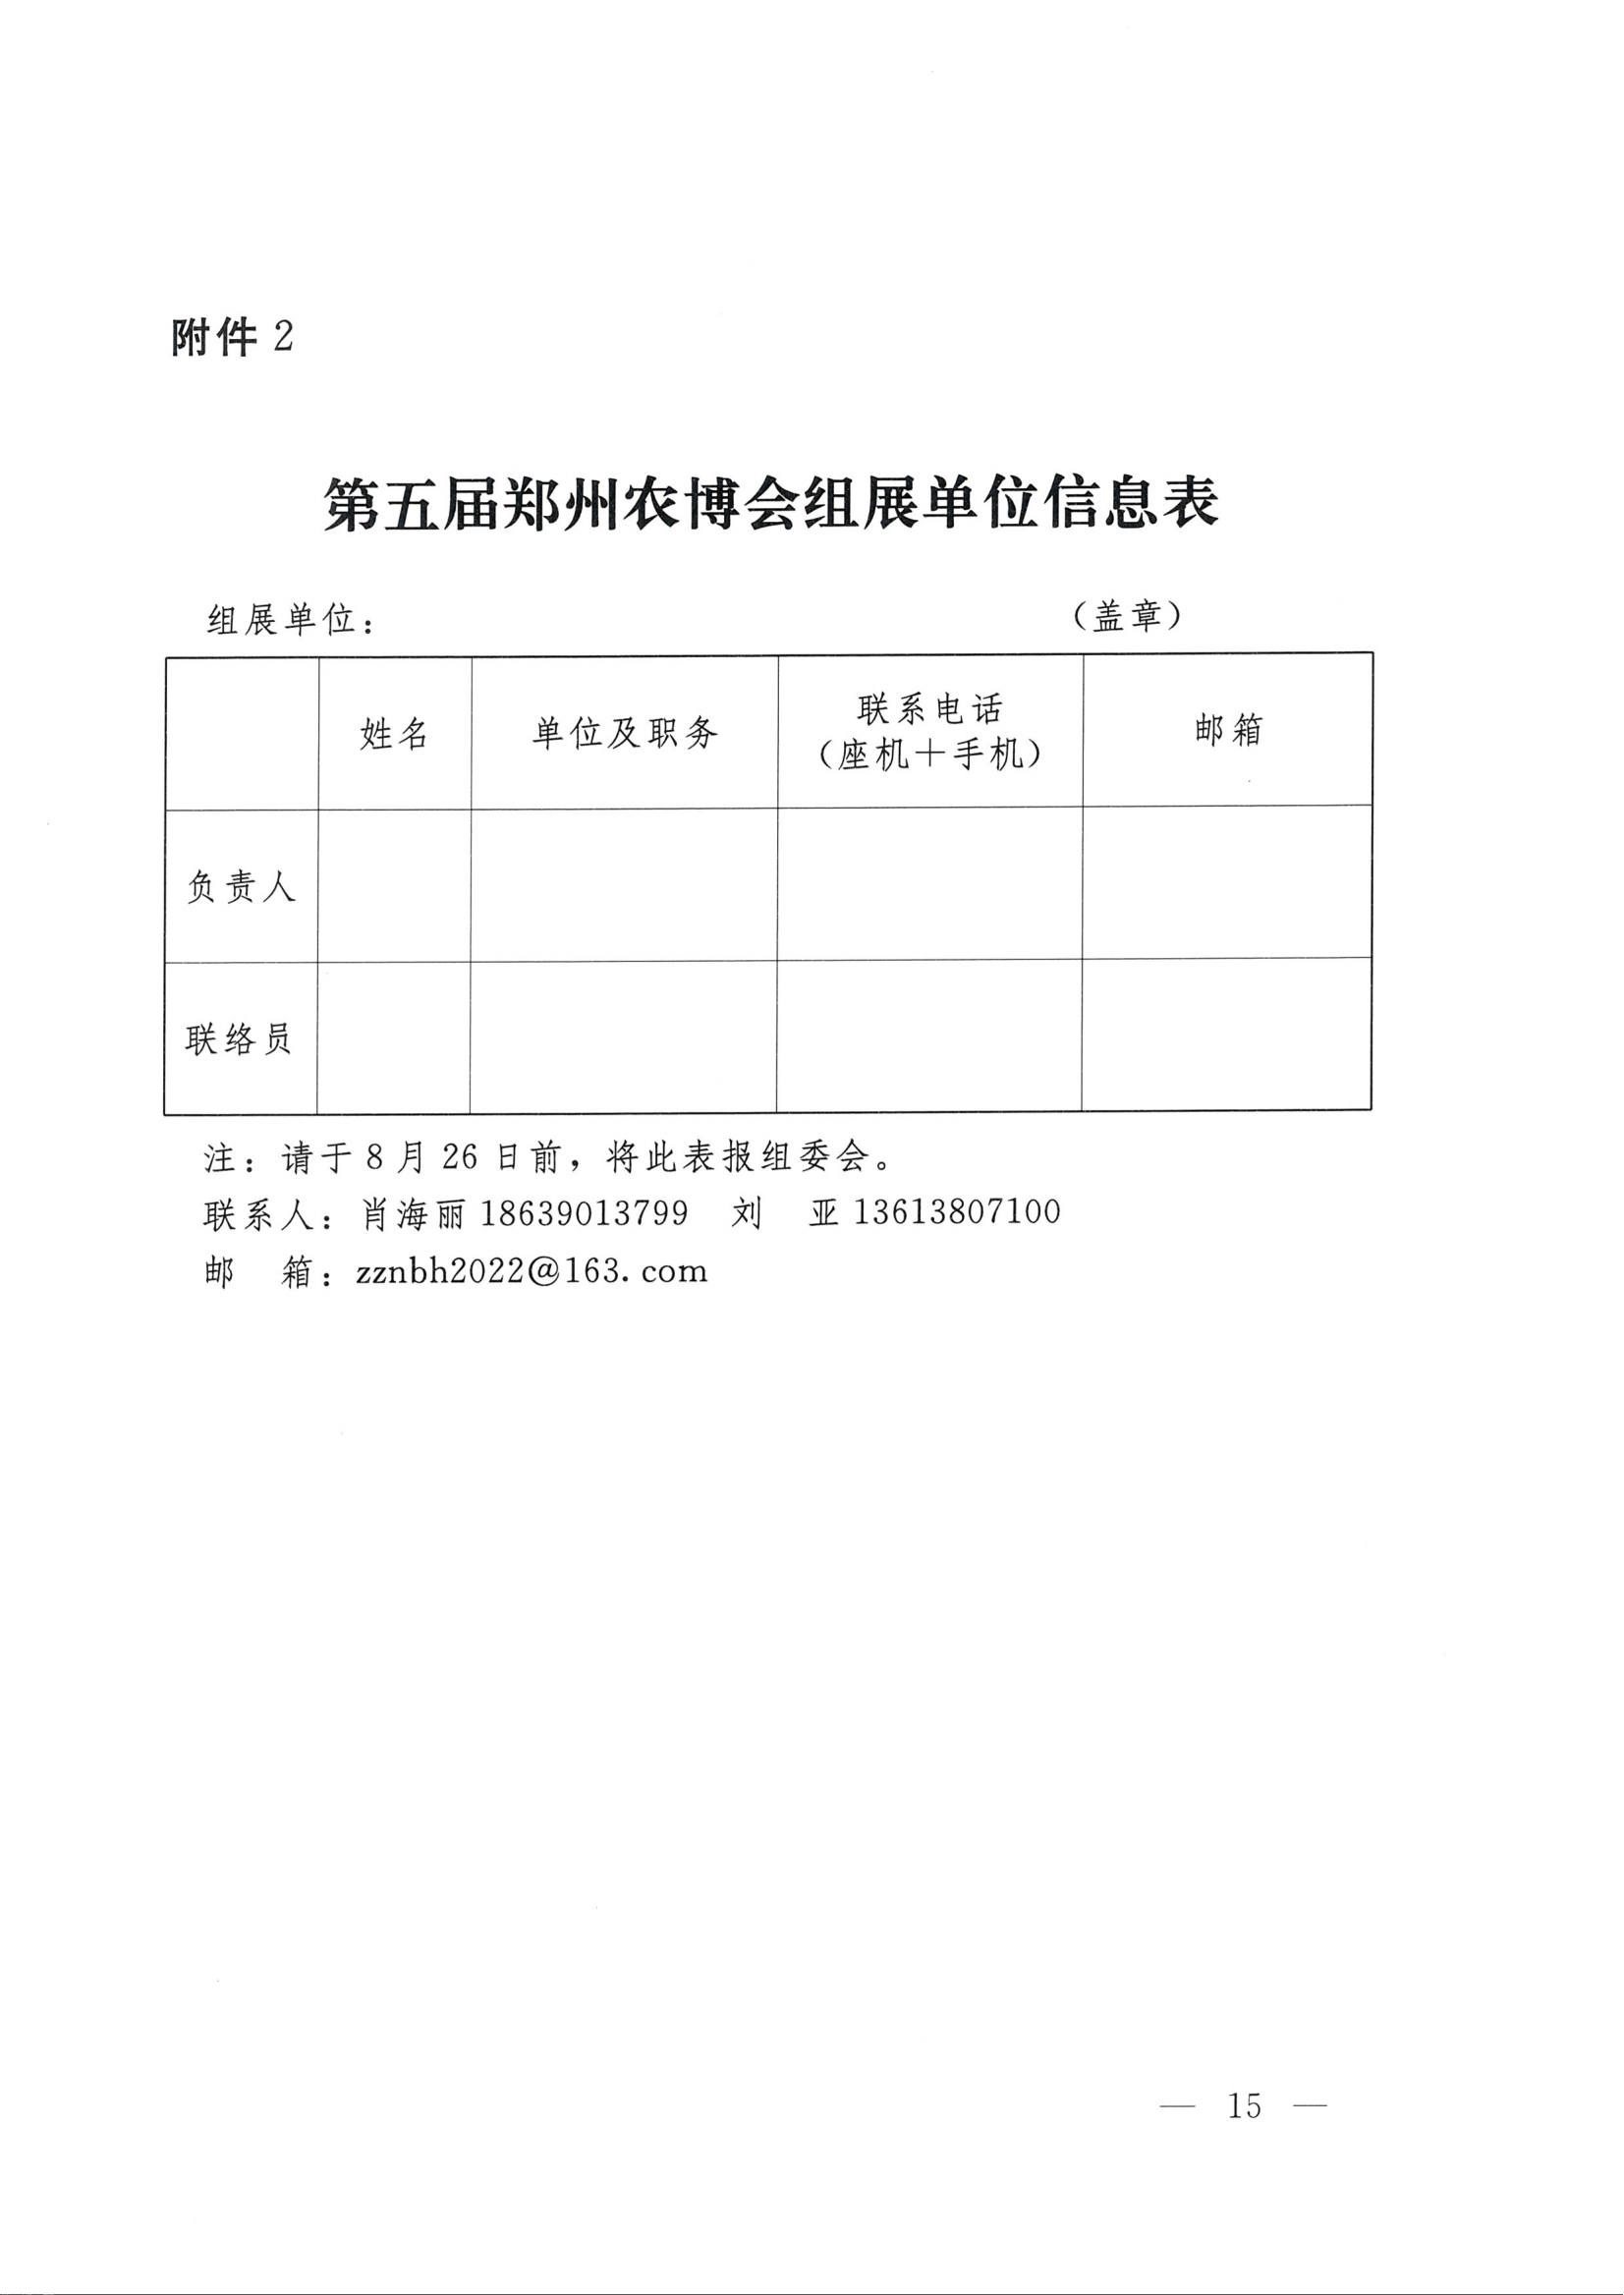 第五届郑州农博会组展单位信息表